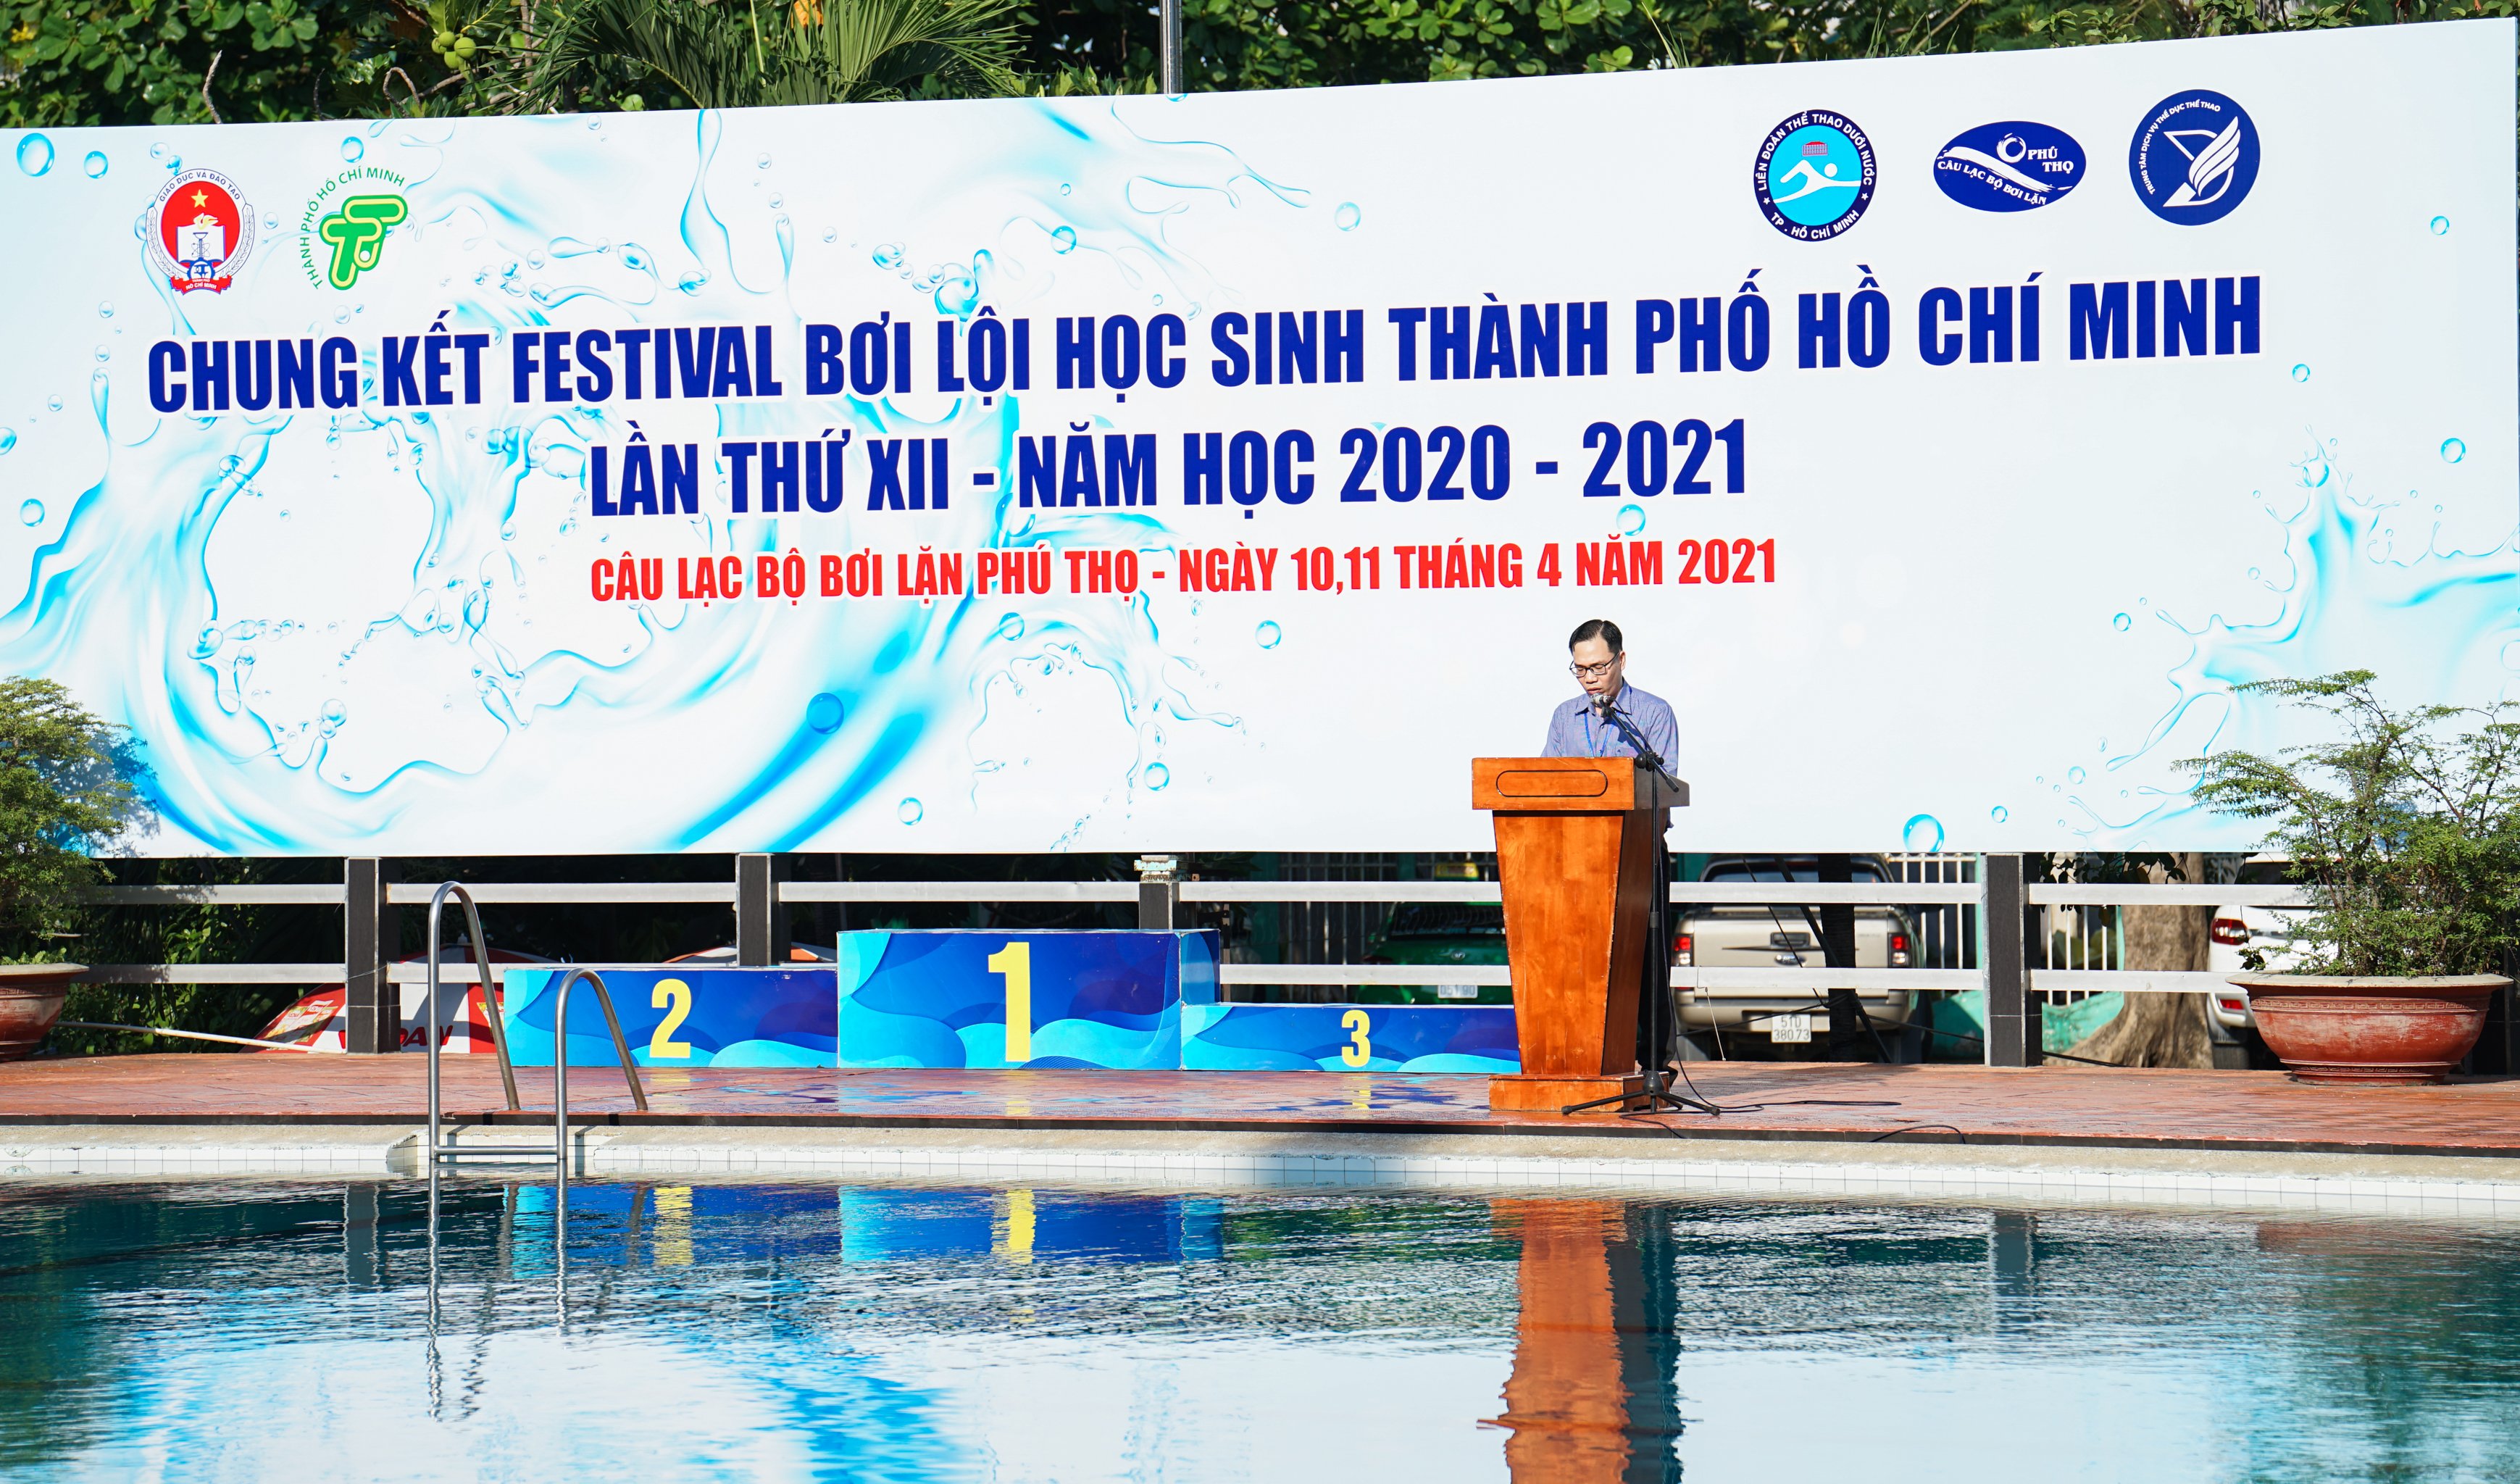 Kết Quả Thi Đấu Giải Bơi Lội Festival Học Sinh Tp.HCM Năm 2021